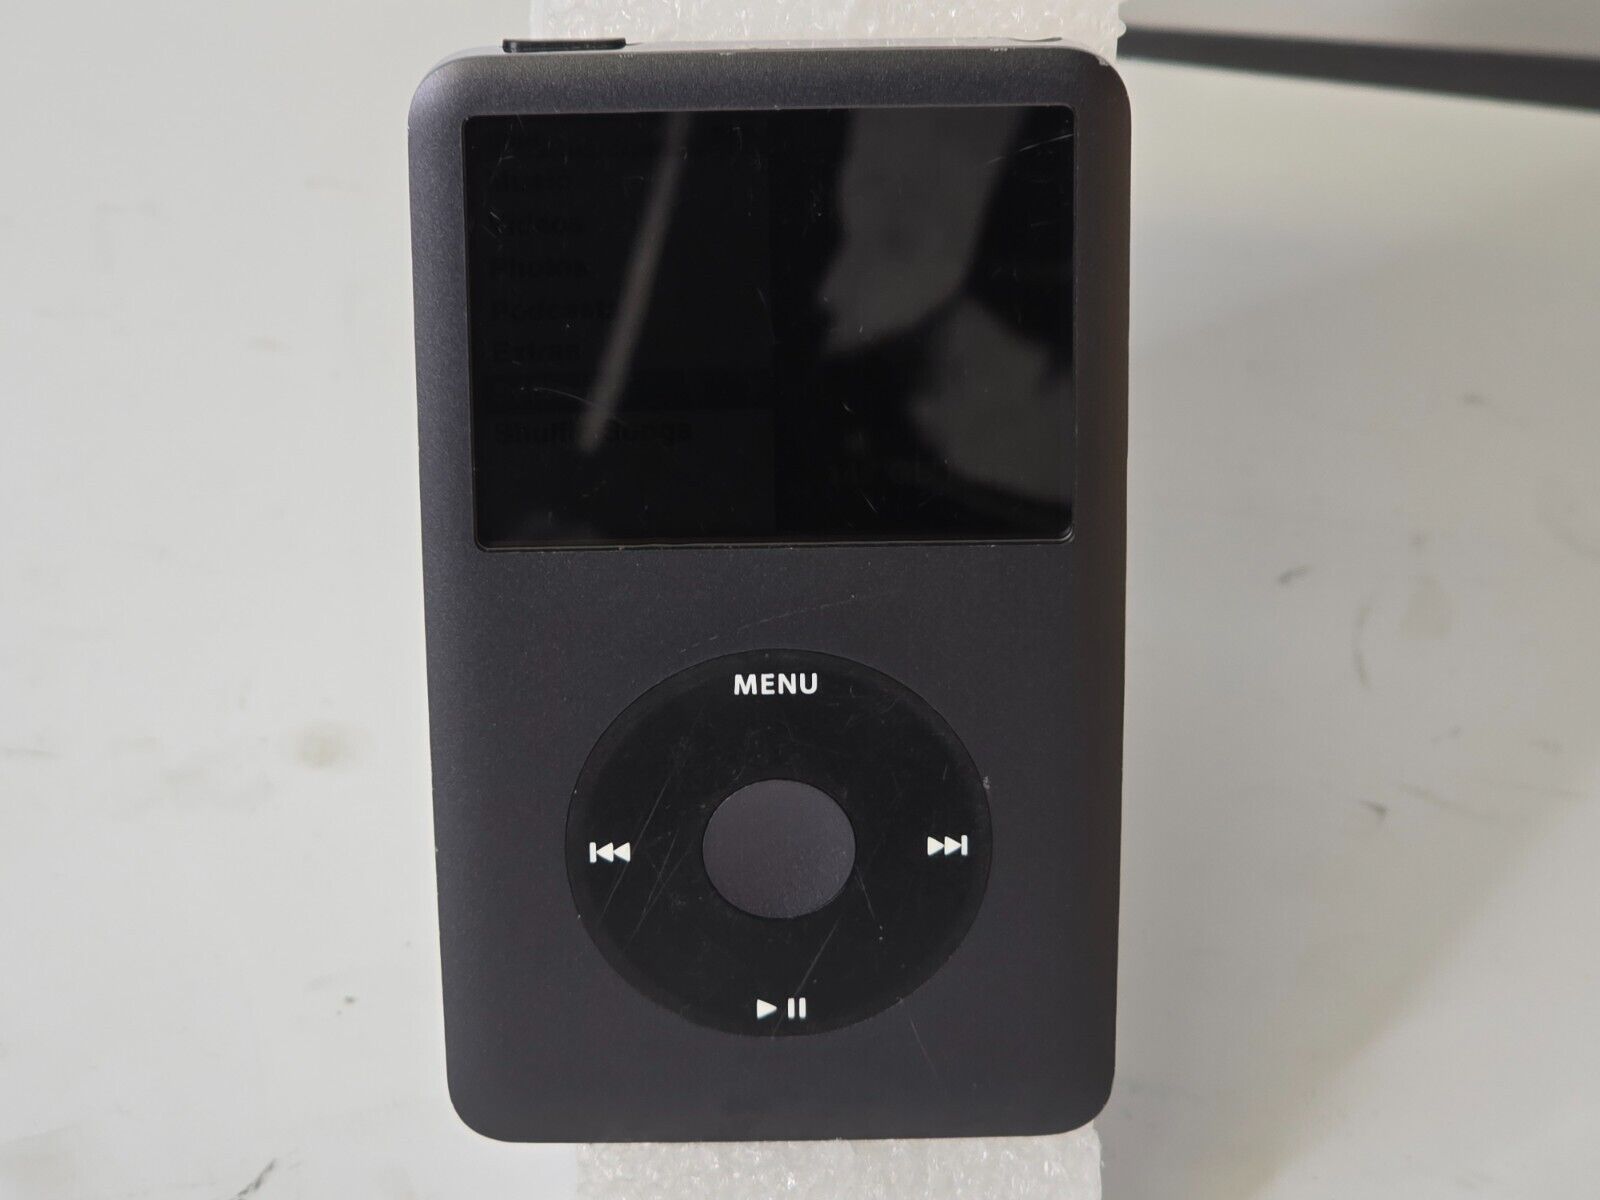 Apple iPod Classic 7th Generation Black (160GB) - MC297LL/A 